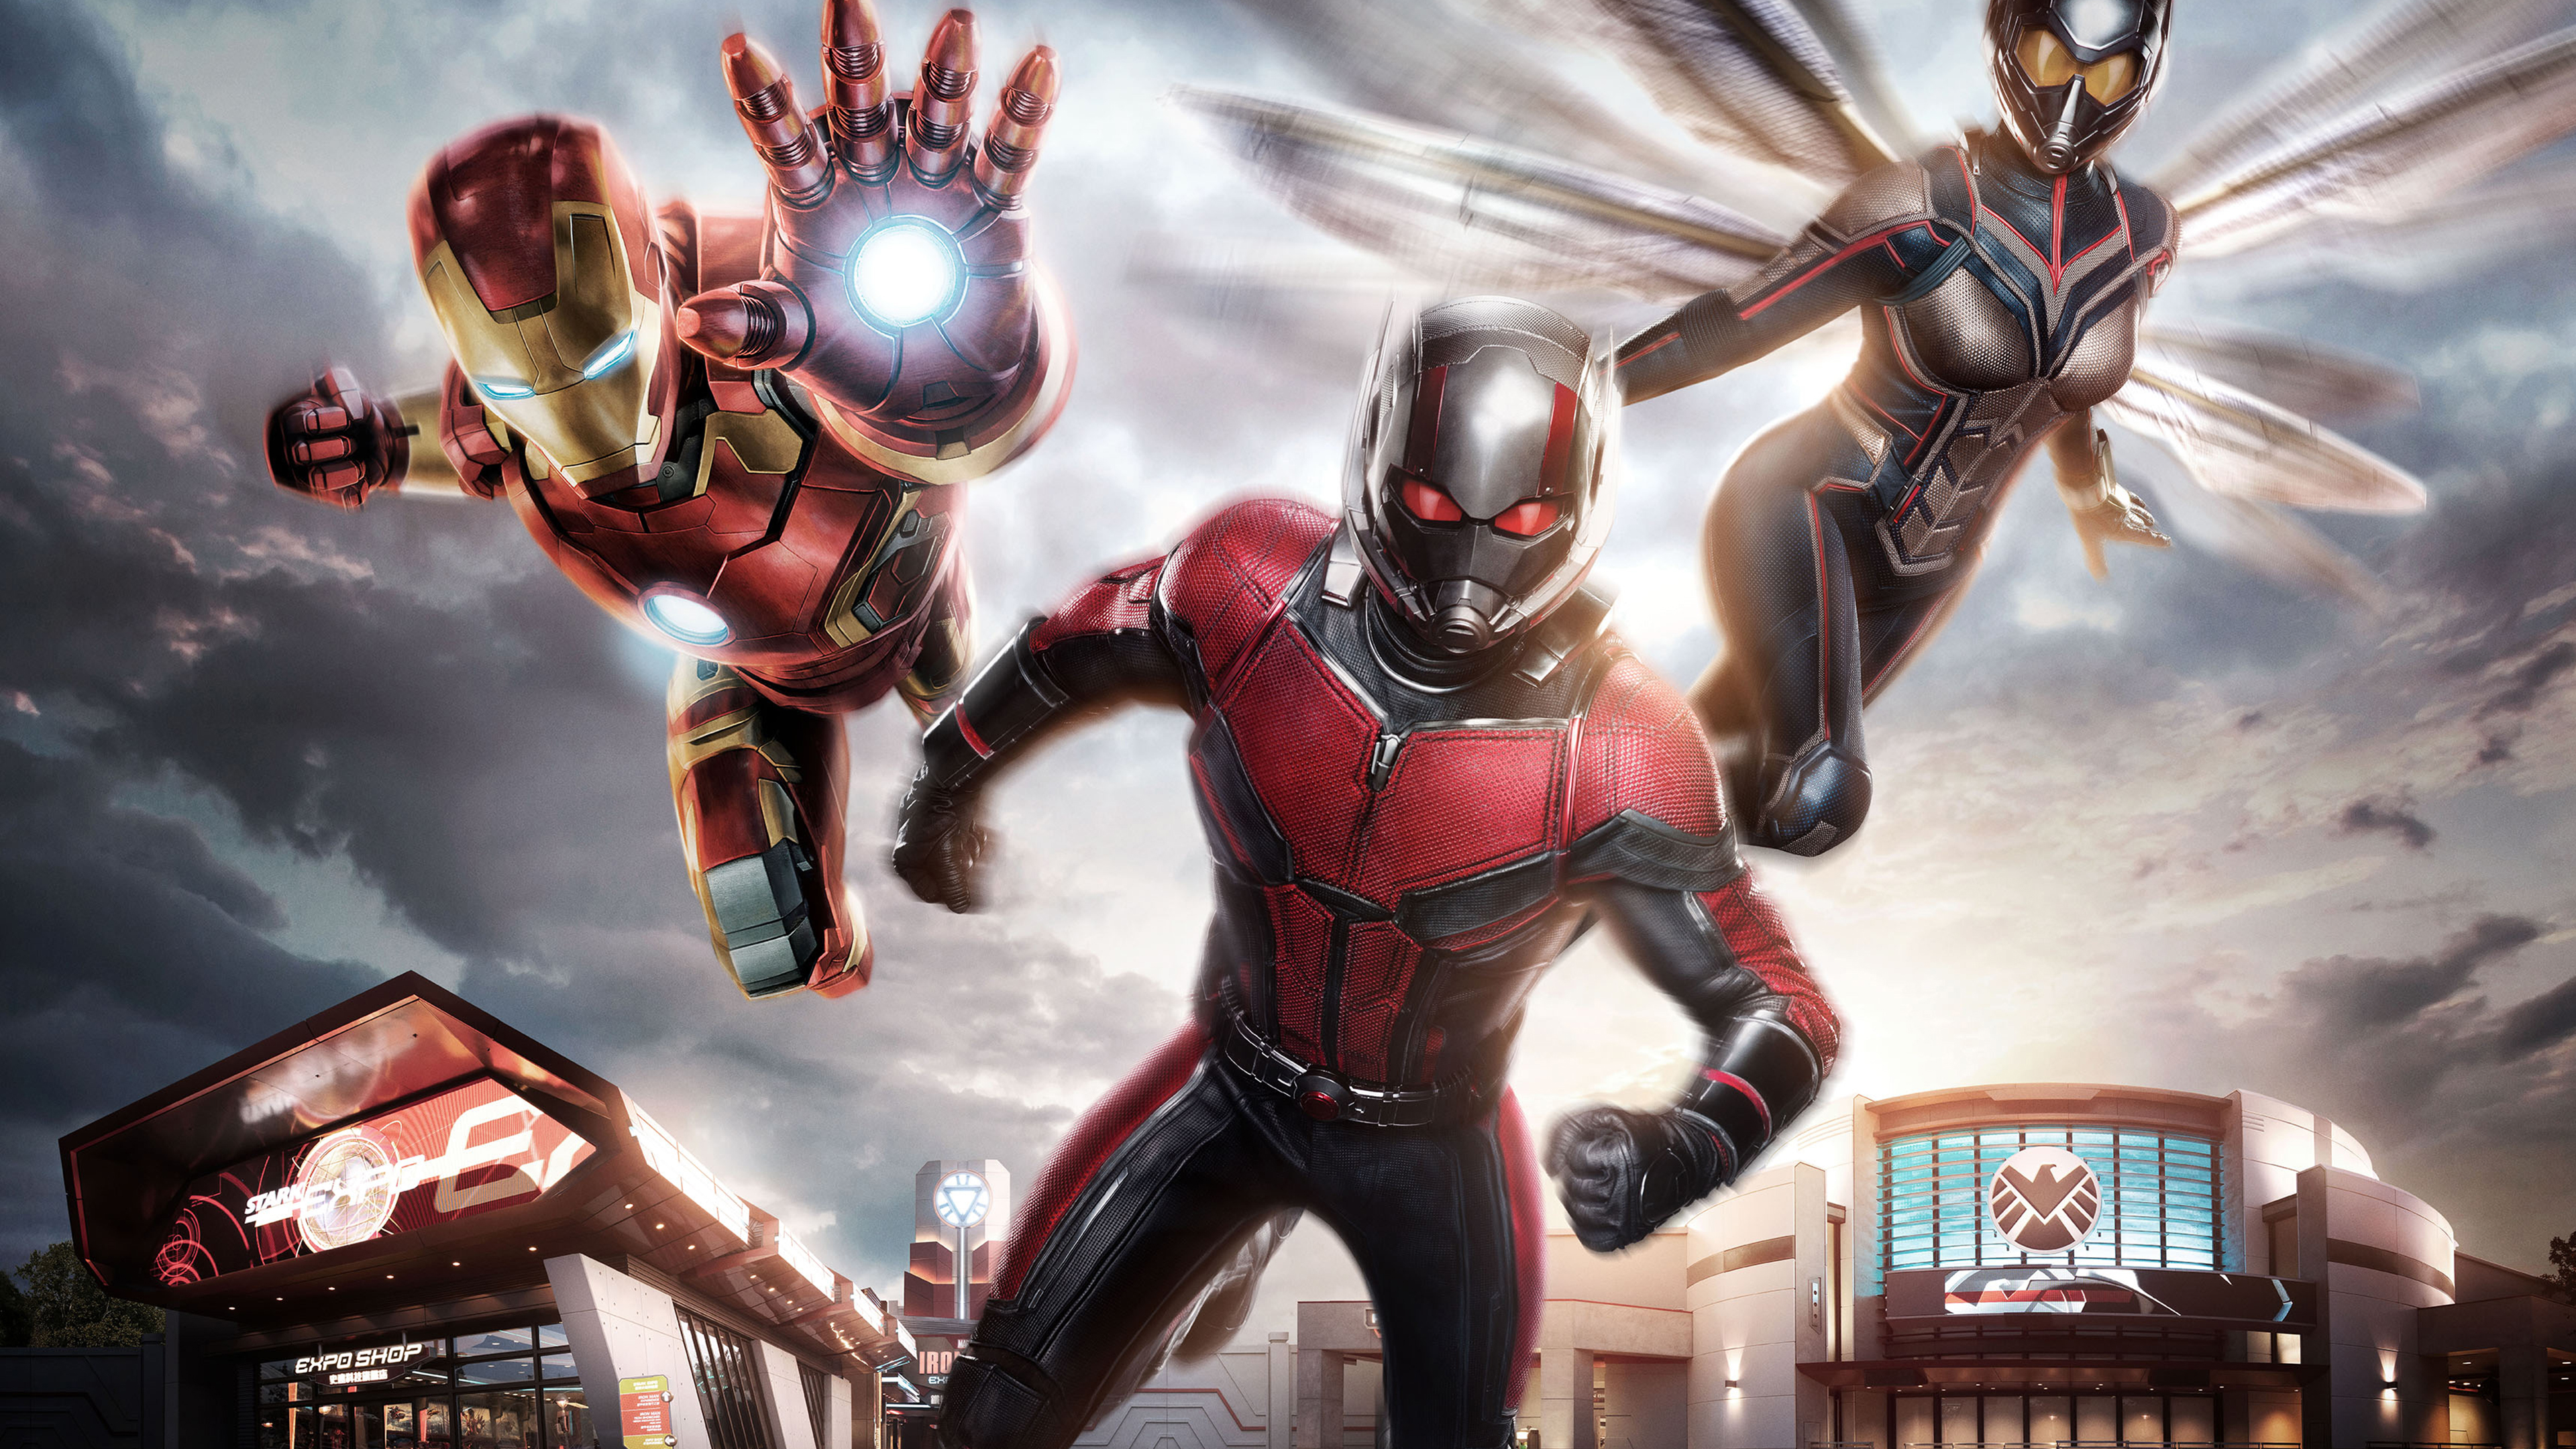 Iron Man Ant Man Wasp 4k - Win A Trip To Hong Kong Disneyland 2019 - HD Wallpaper 